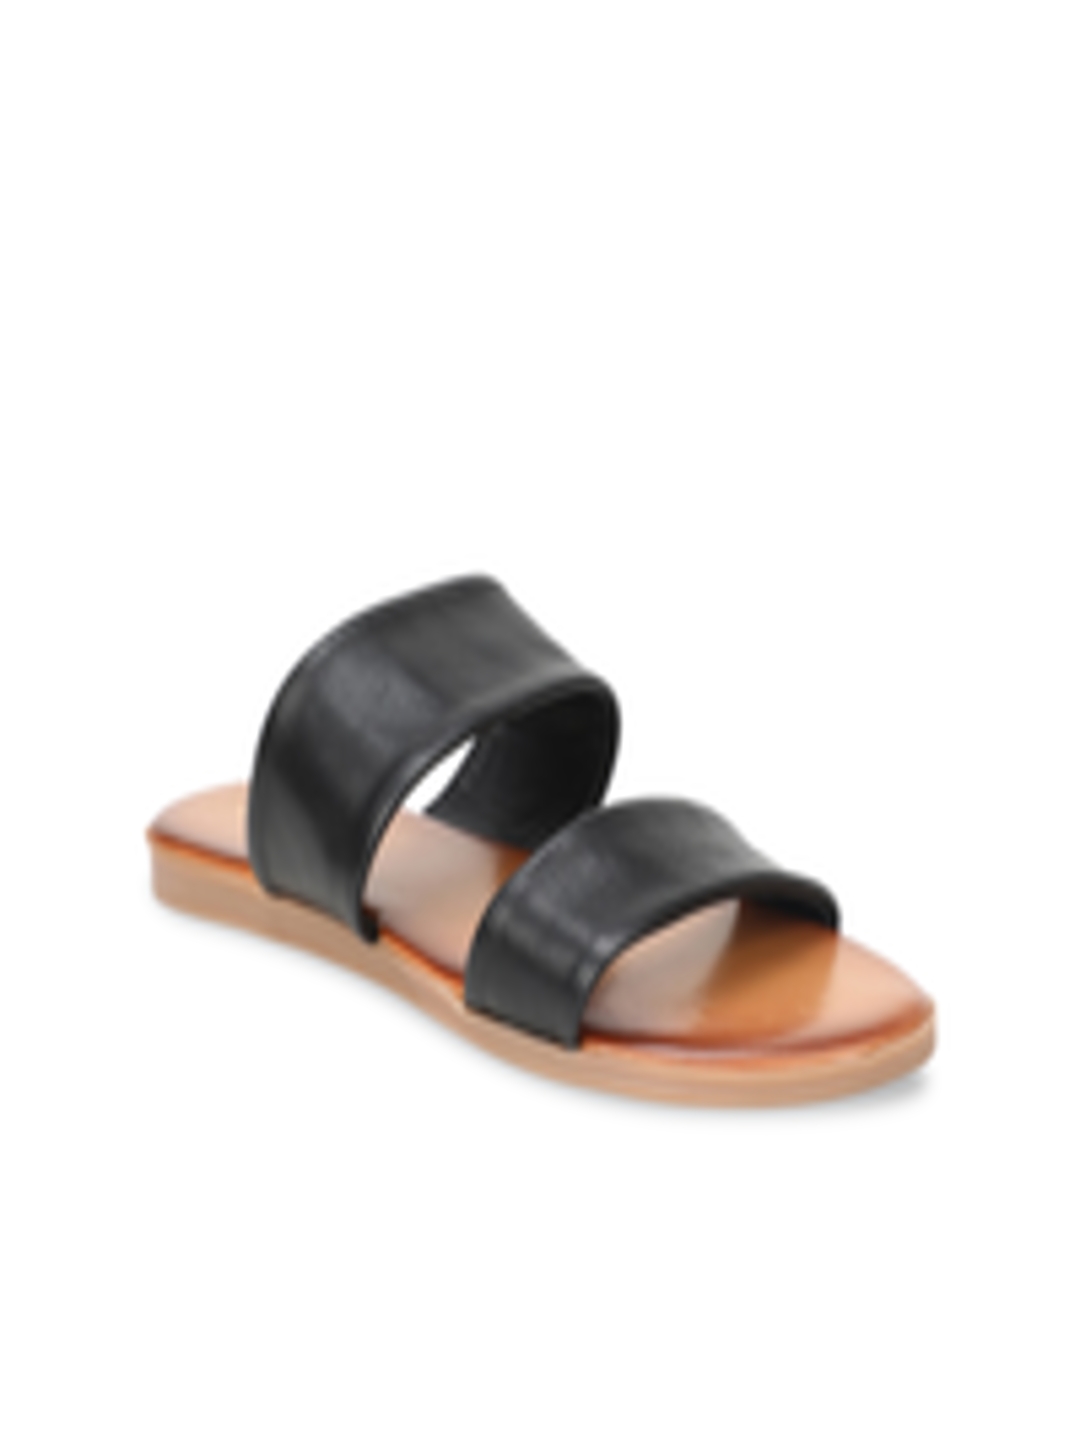 Buy ALDO Women Black Solid Leather Open Toe Flats - Flats for Women ...